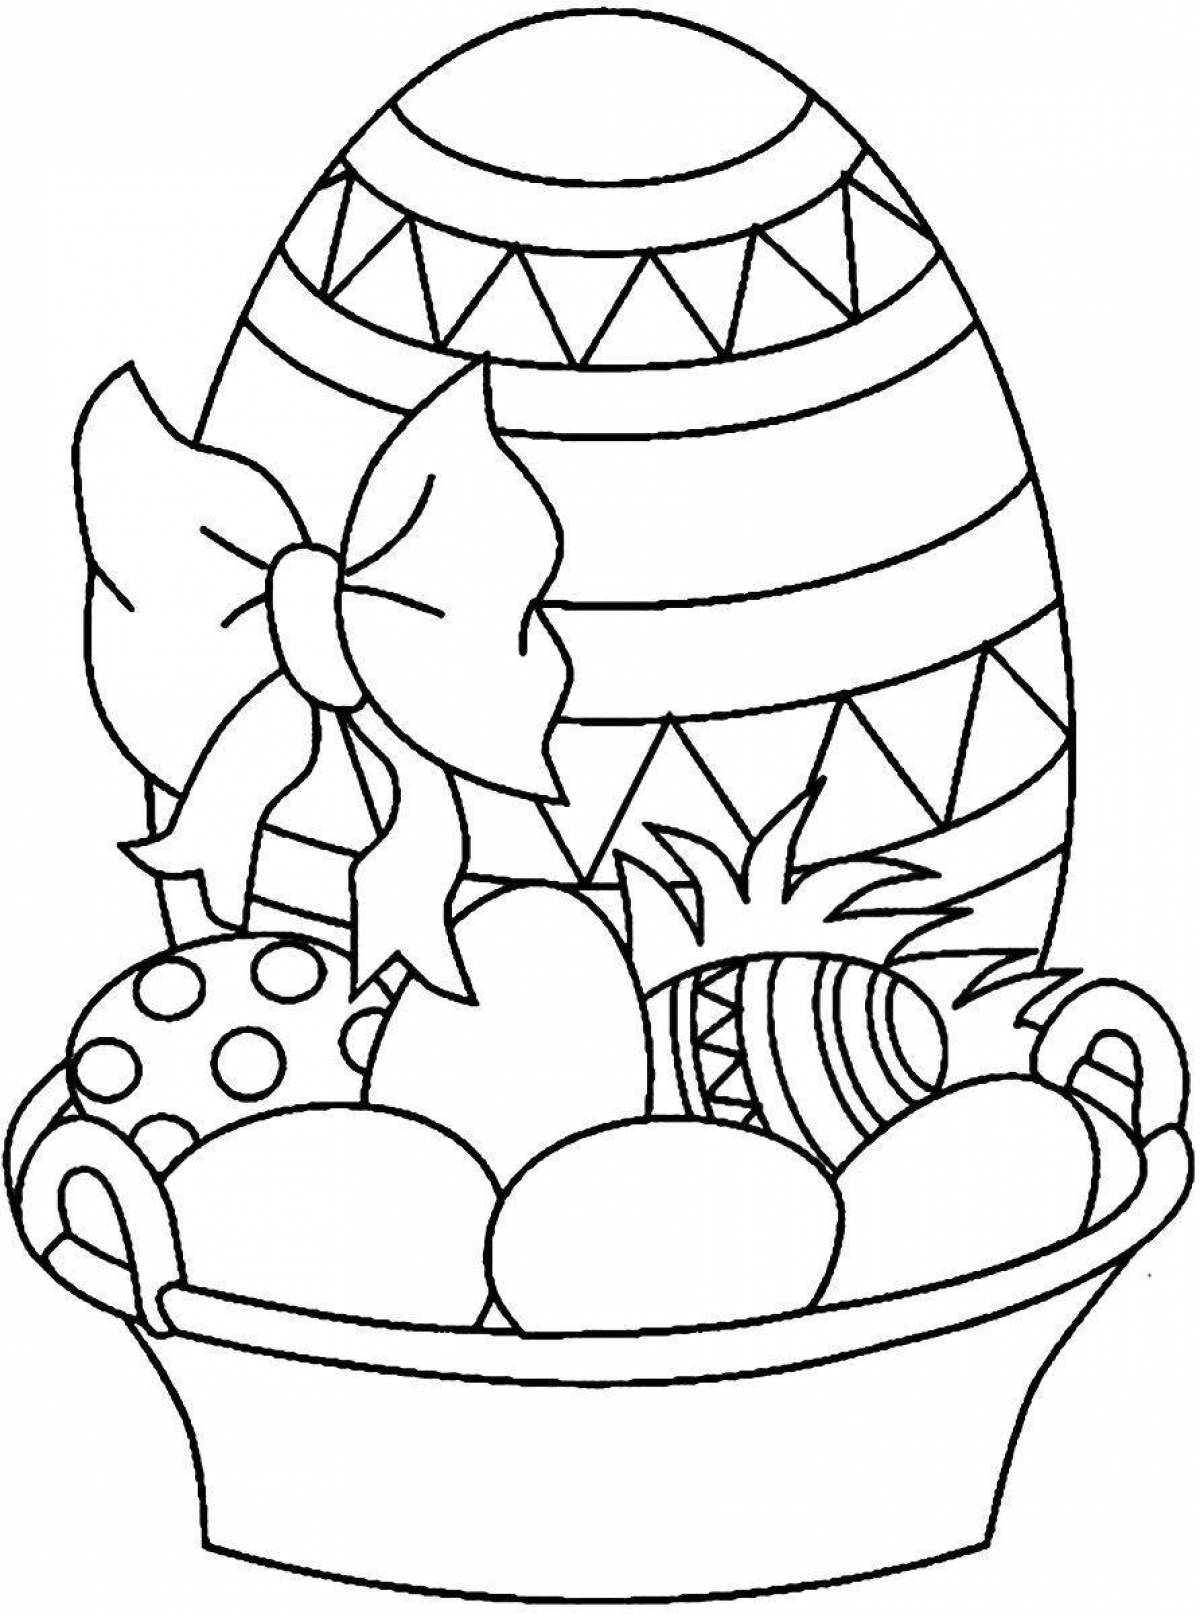 Рисунок ко дню пасхи. Раскраски пасхальные для детей. Раскраска Пасха для детей. Пасхальное яйцо раскраска. Раскраска на тему Пасха для детей.